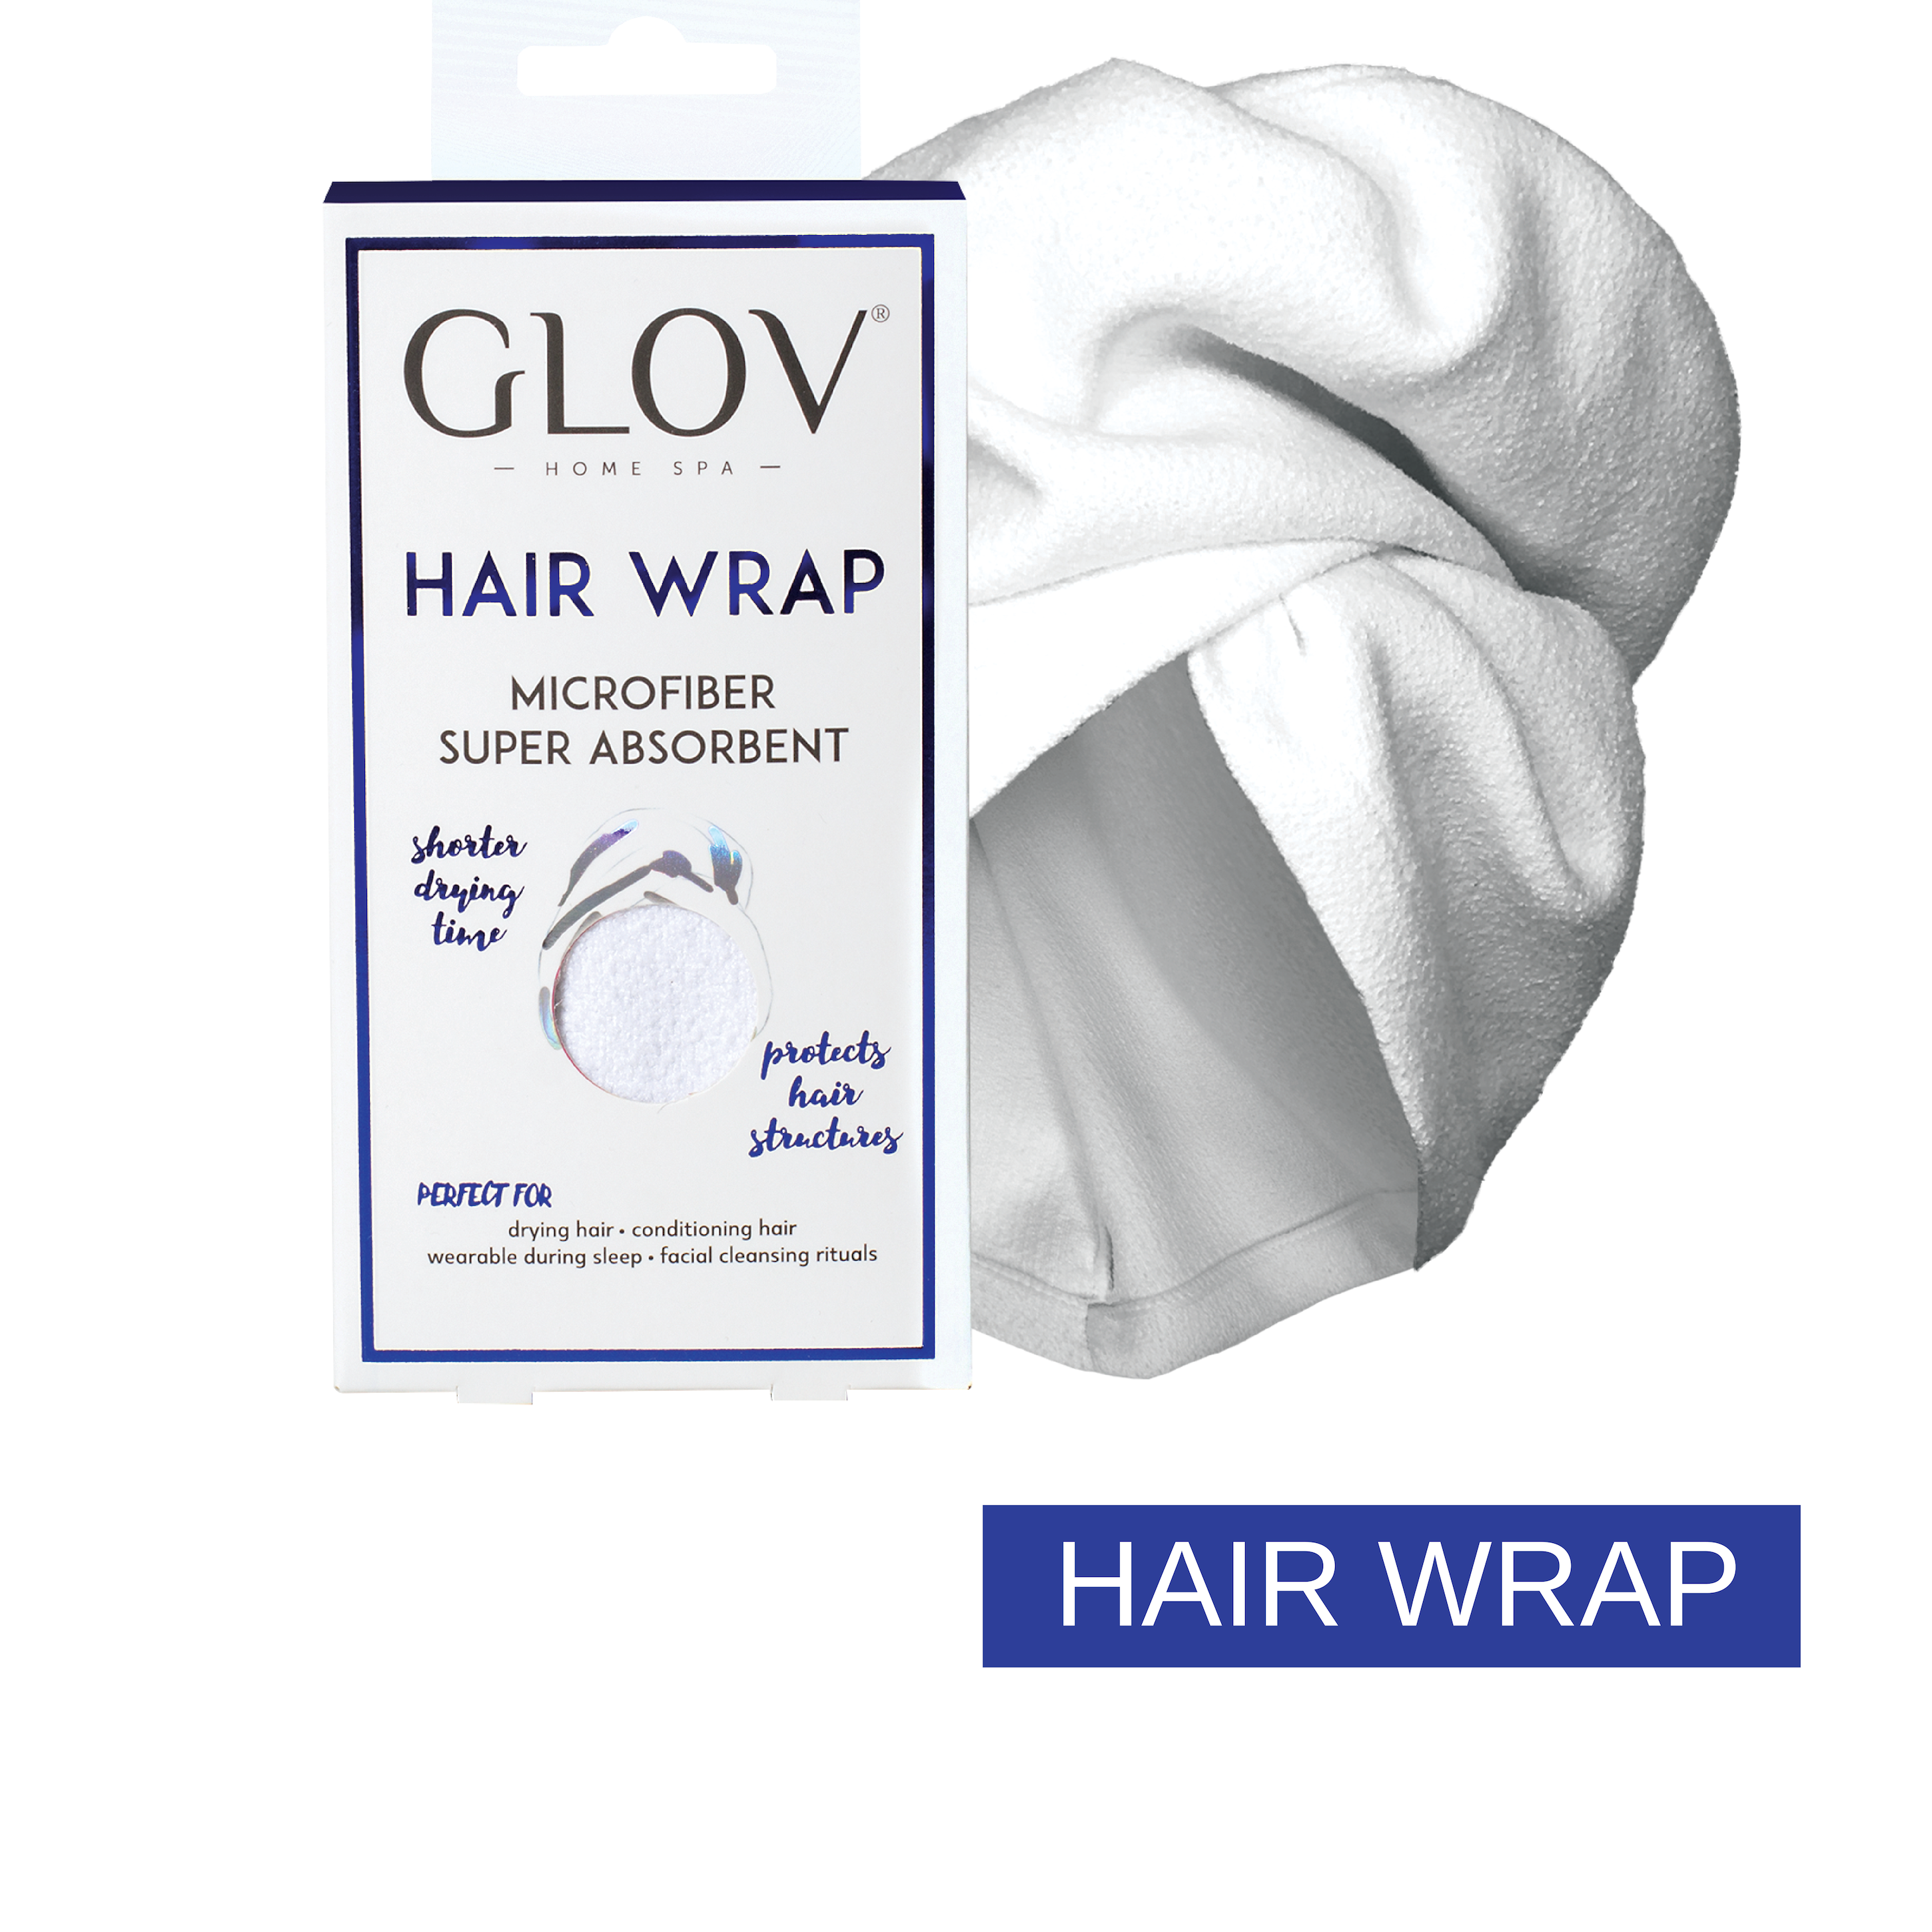 06. GLOV Hair Wrap